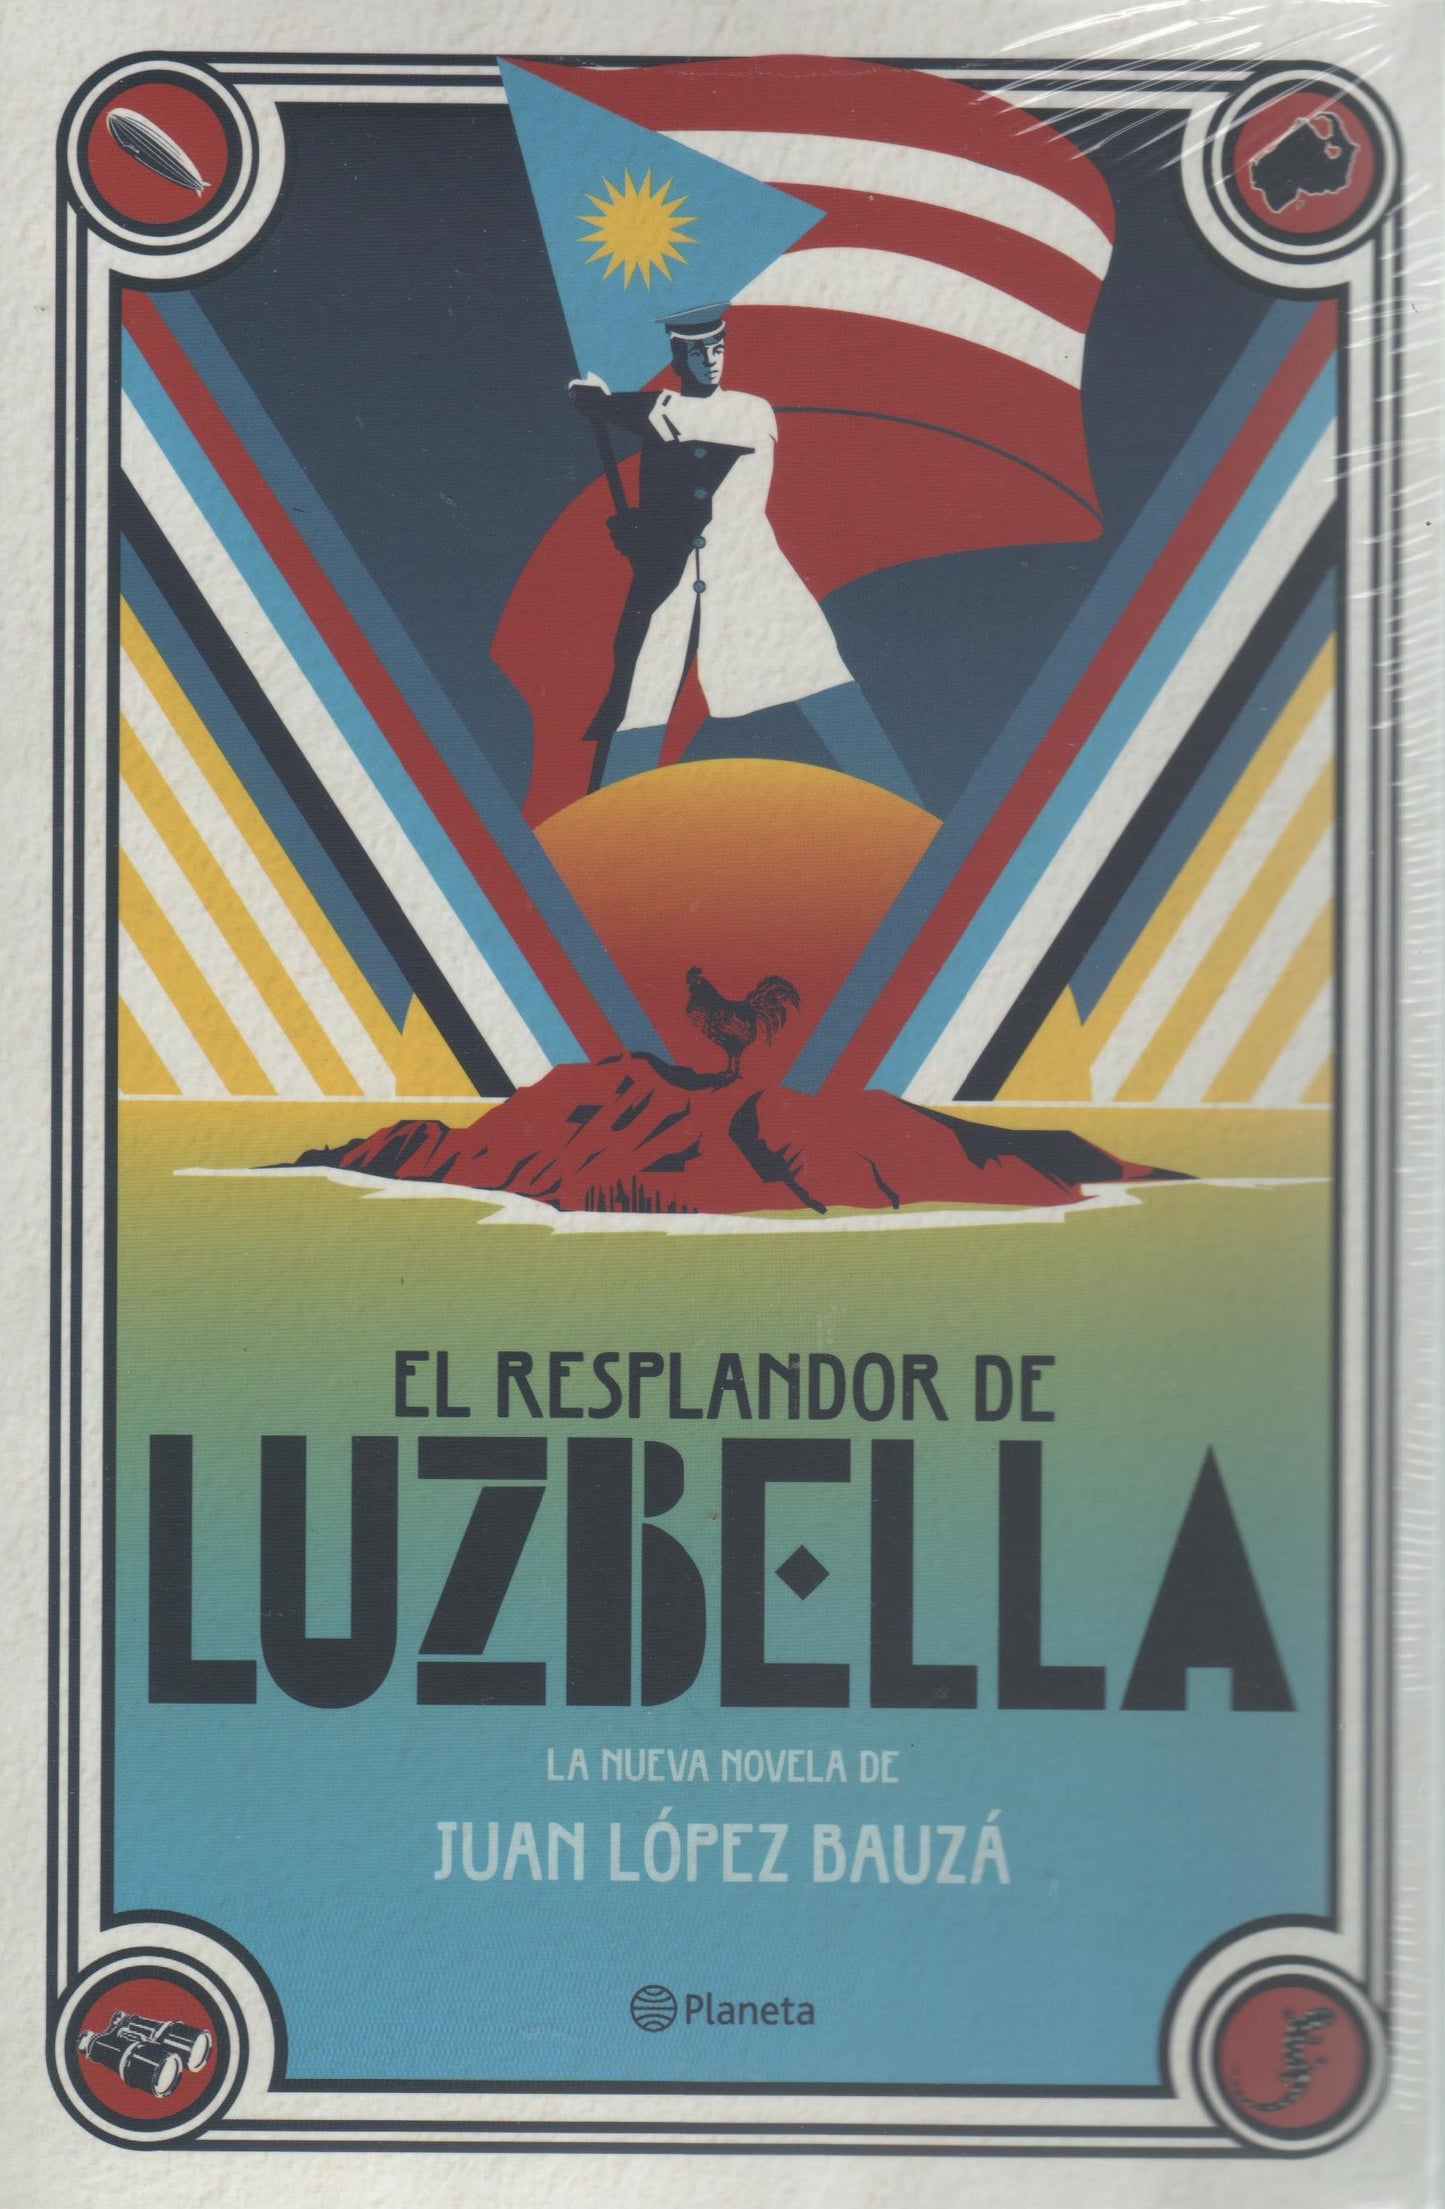 El resplandor de Luzbella